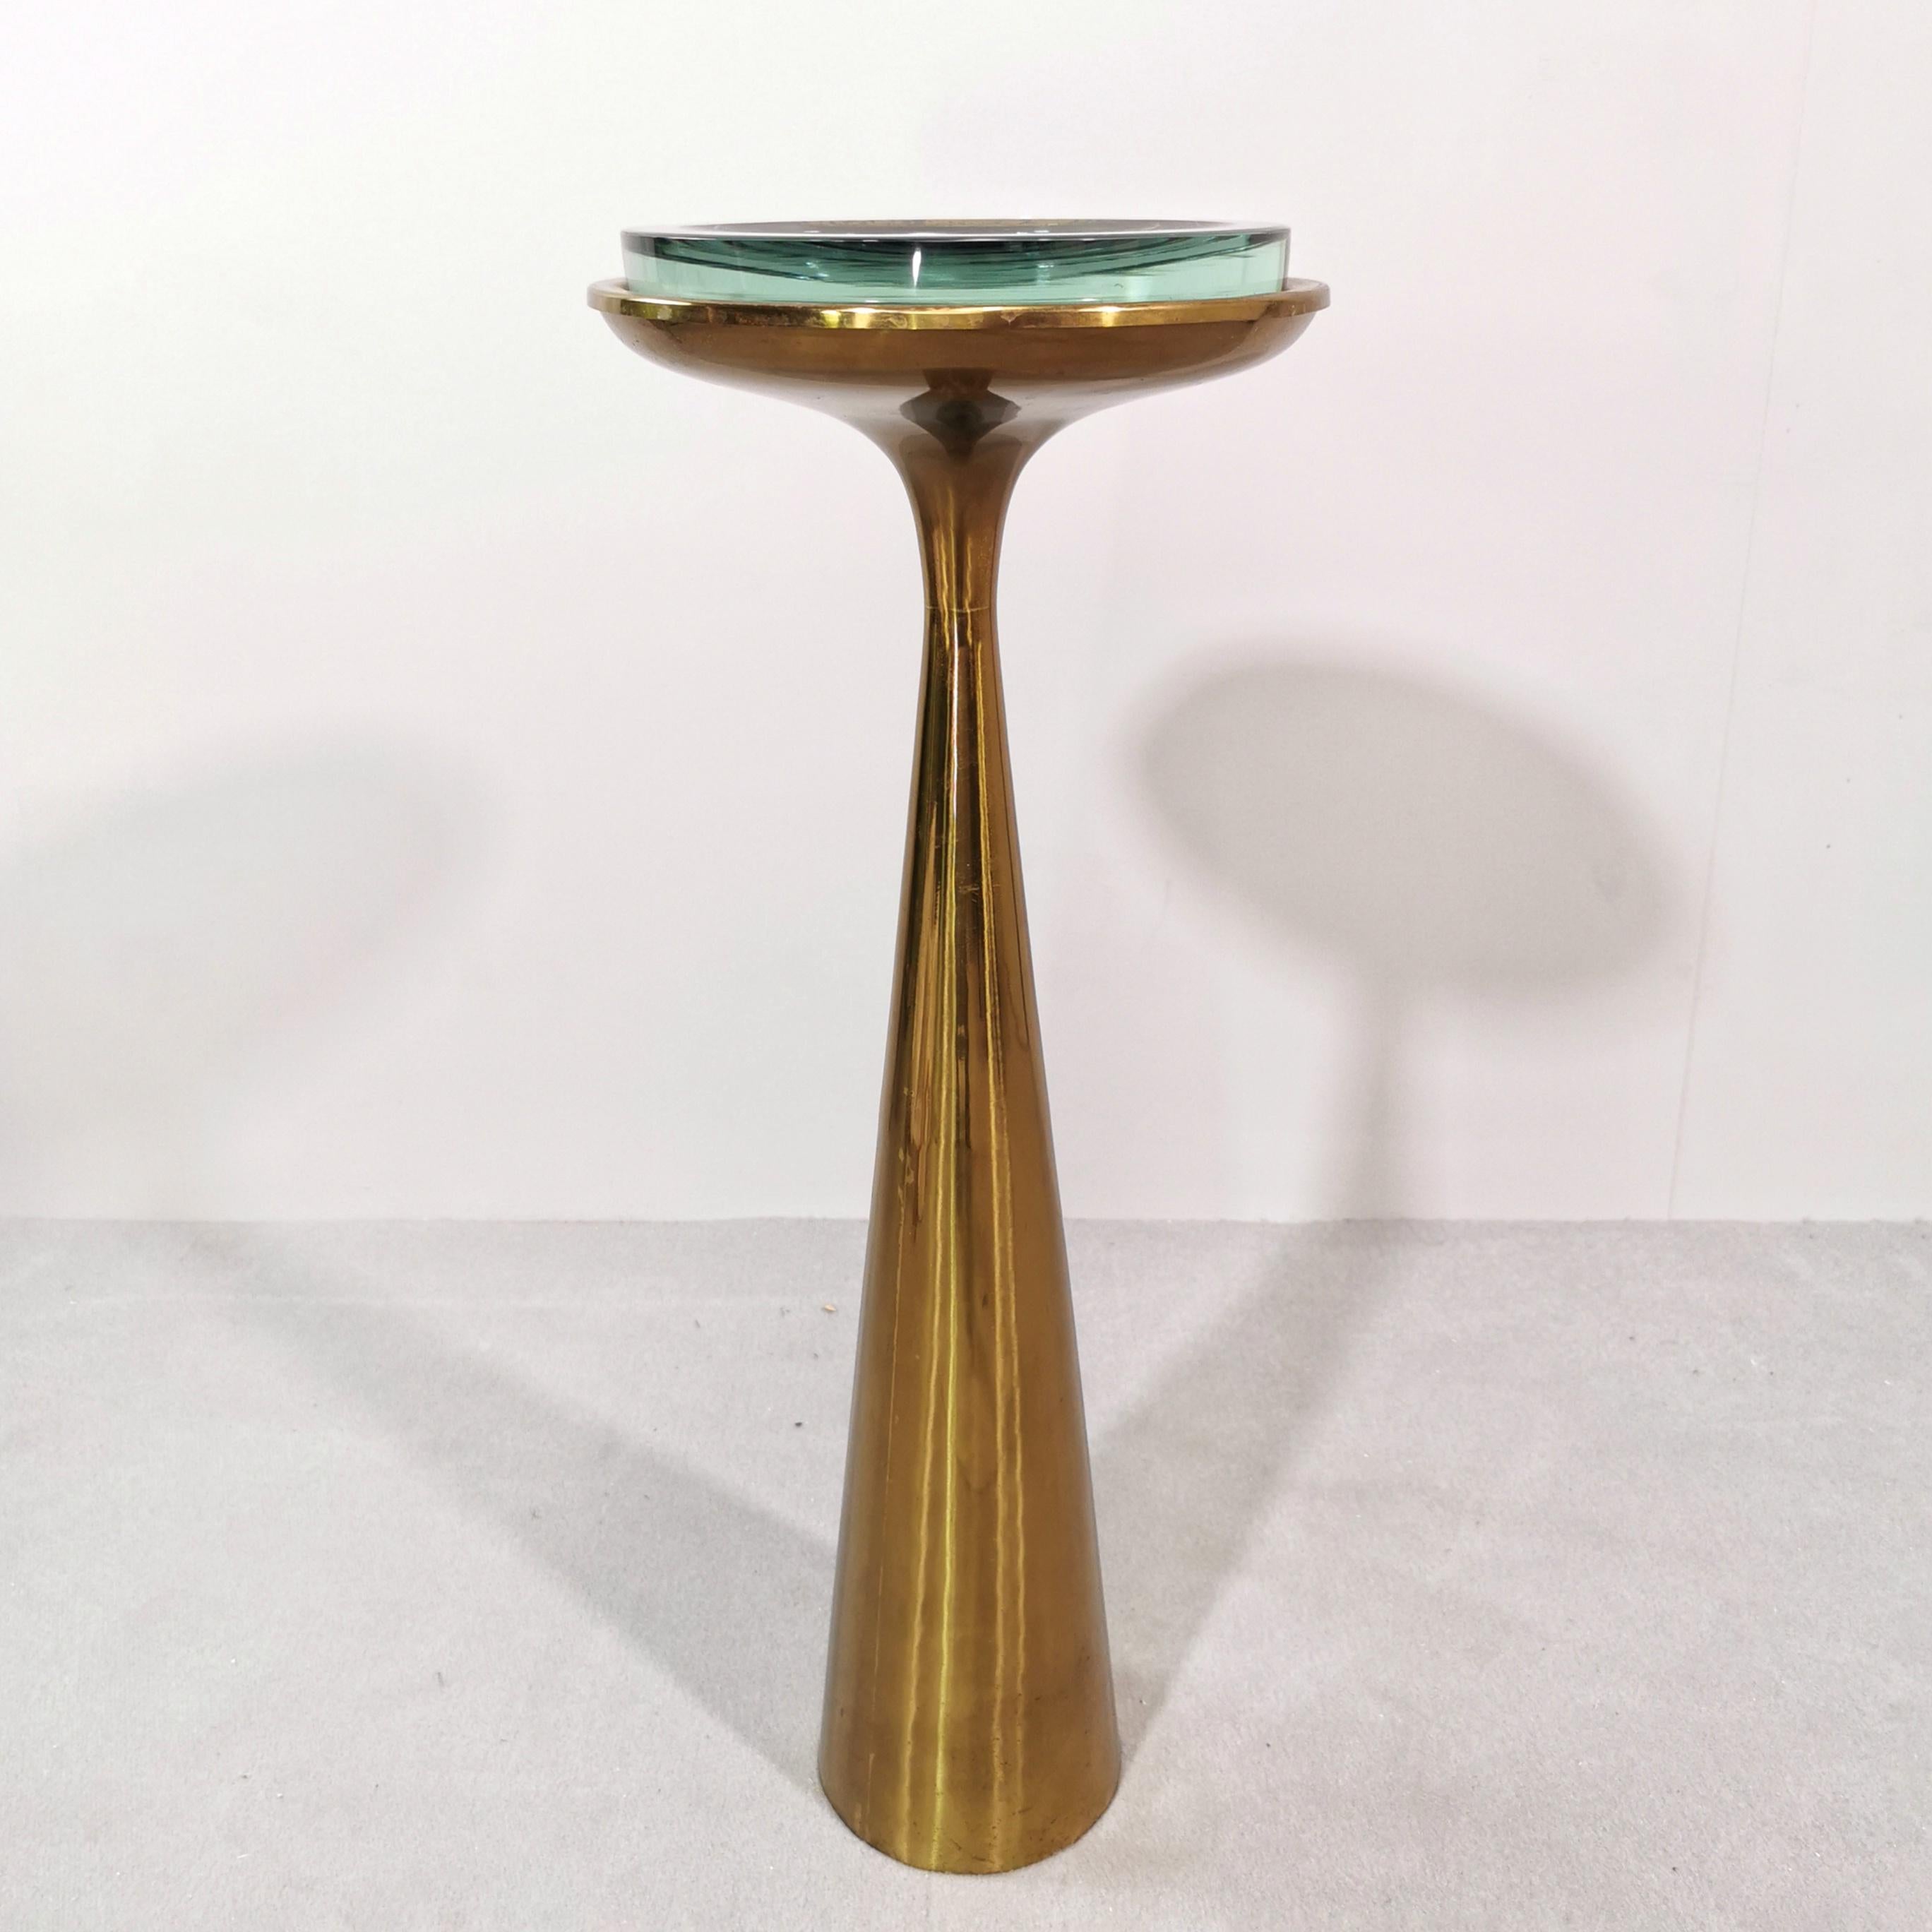 Rare table-cendrier mod.1176 conçue par Max Ingrand pour Fontana Arte dans les années 1960.
Le cadre conique en laiton, d'une hauteur d'environ 65 cm, est en très bon état et ne présente aucune marque particulière 
la plaque de verre fontanaarte est